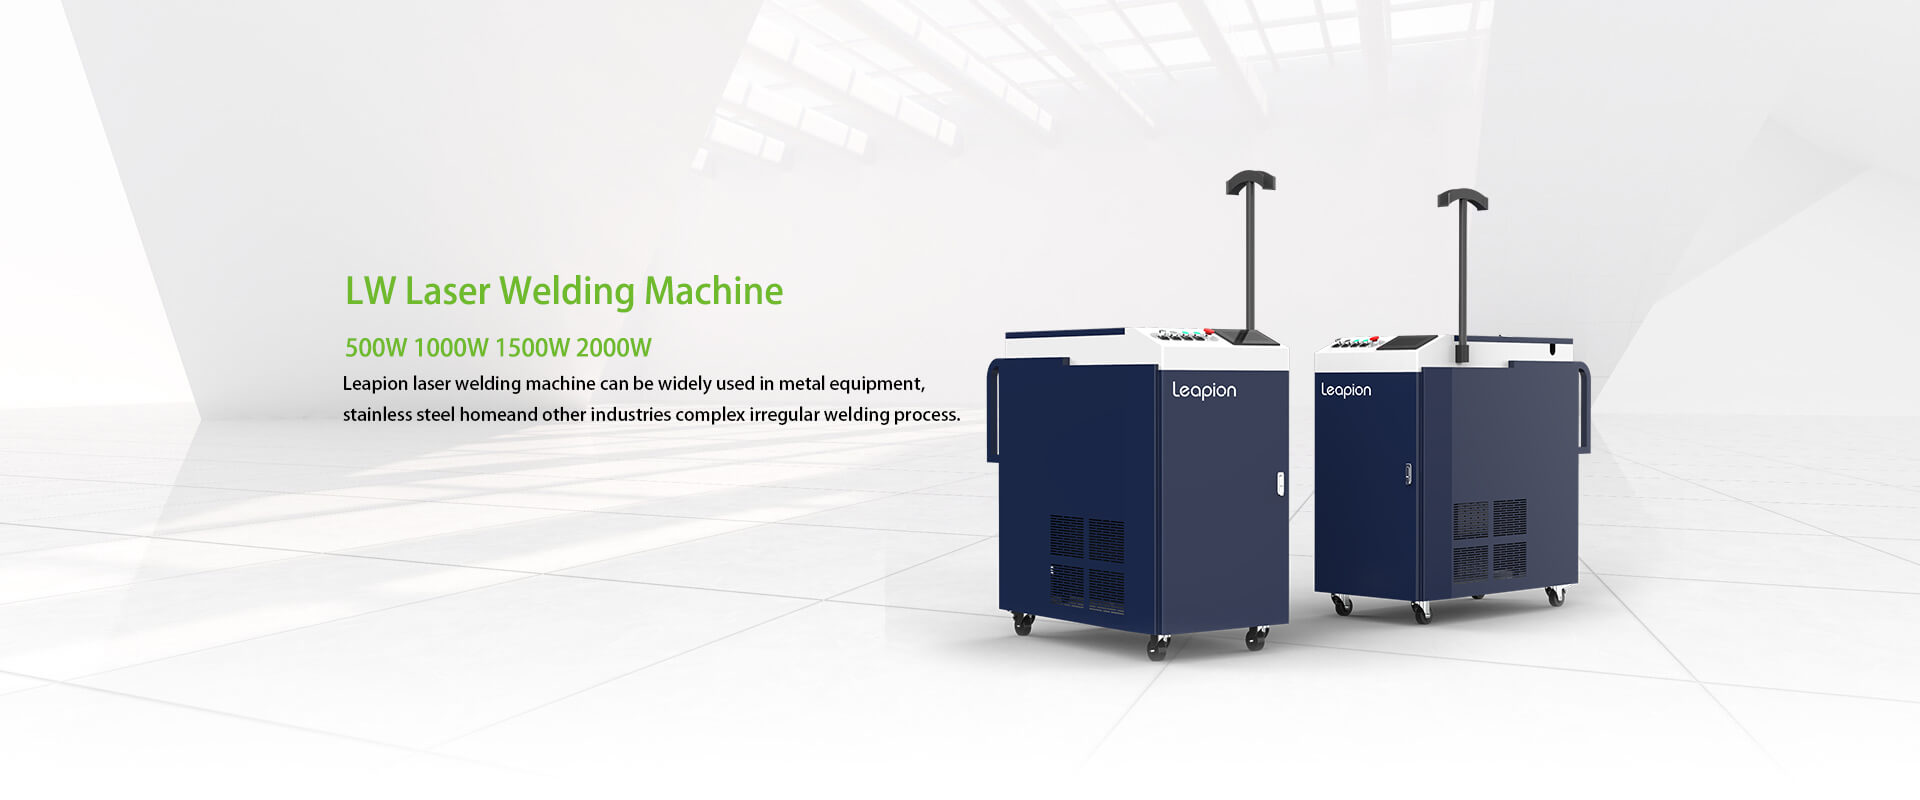 LW-Laser-Welding-Machine